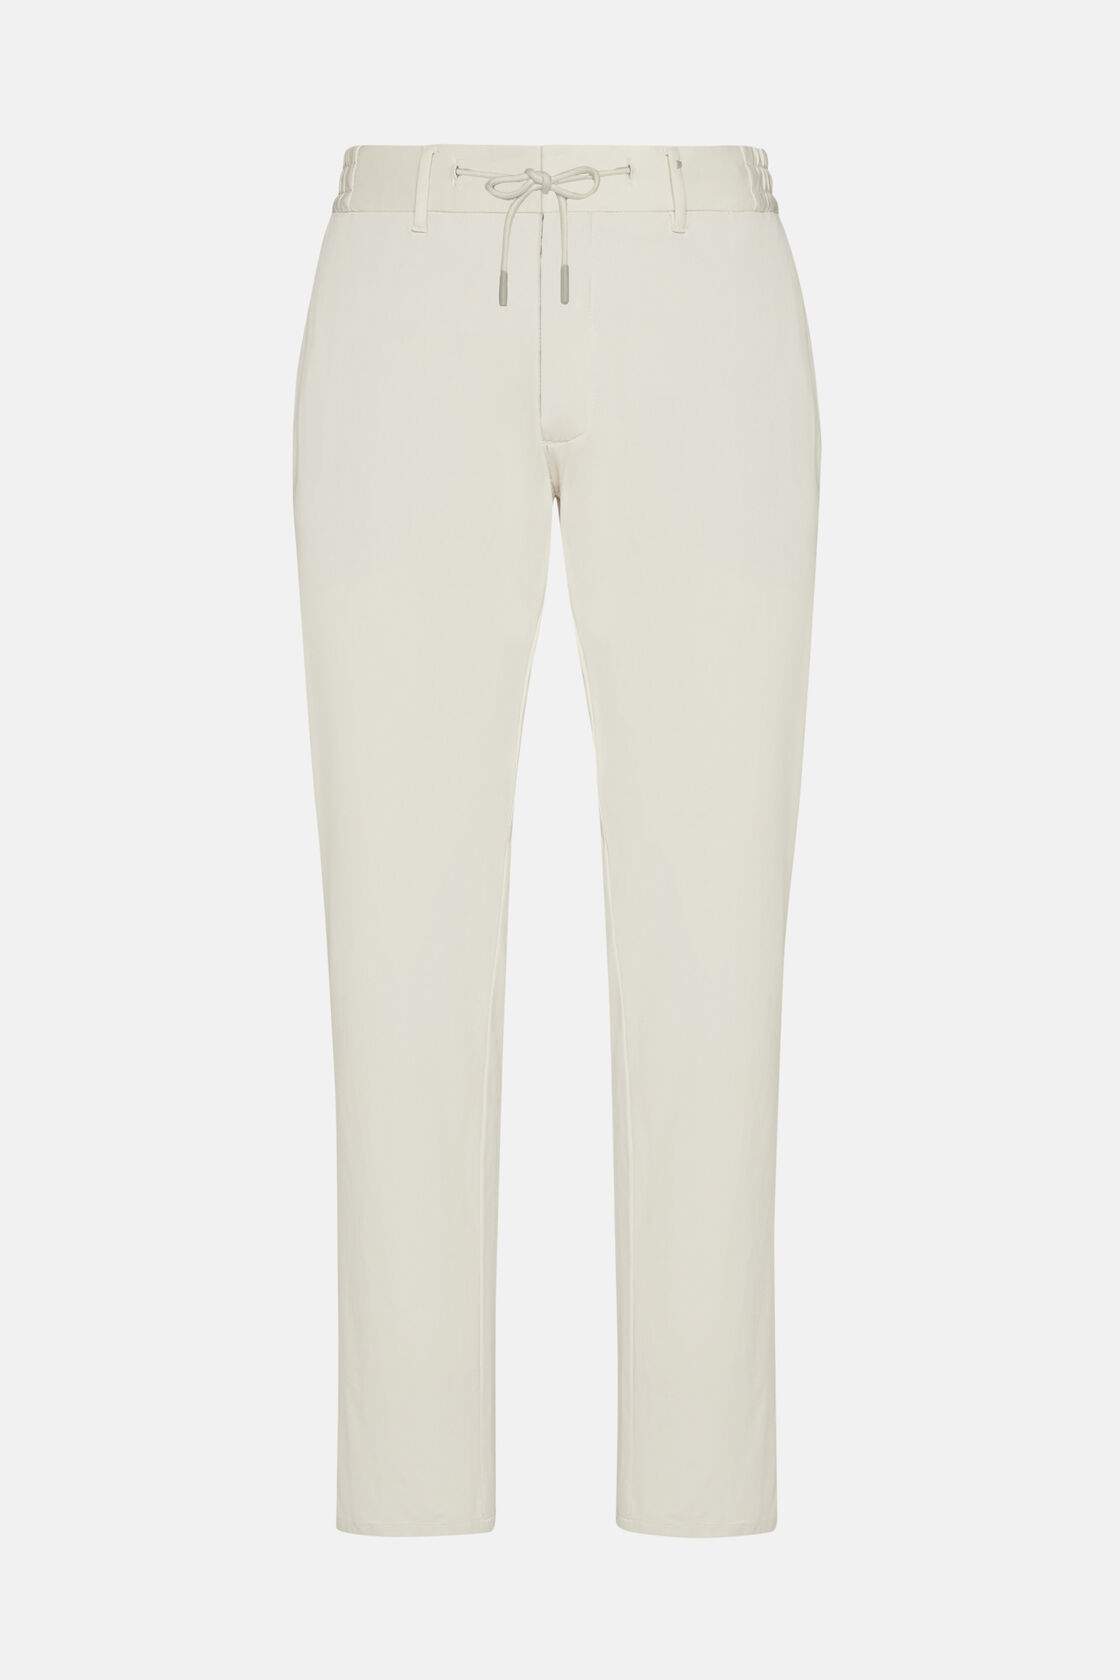 Pantalon En Nylon Extensible B Tech, Blanc, hi-res